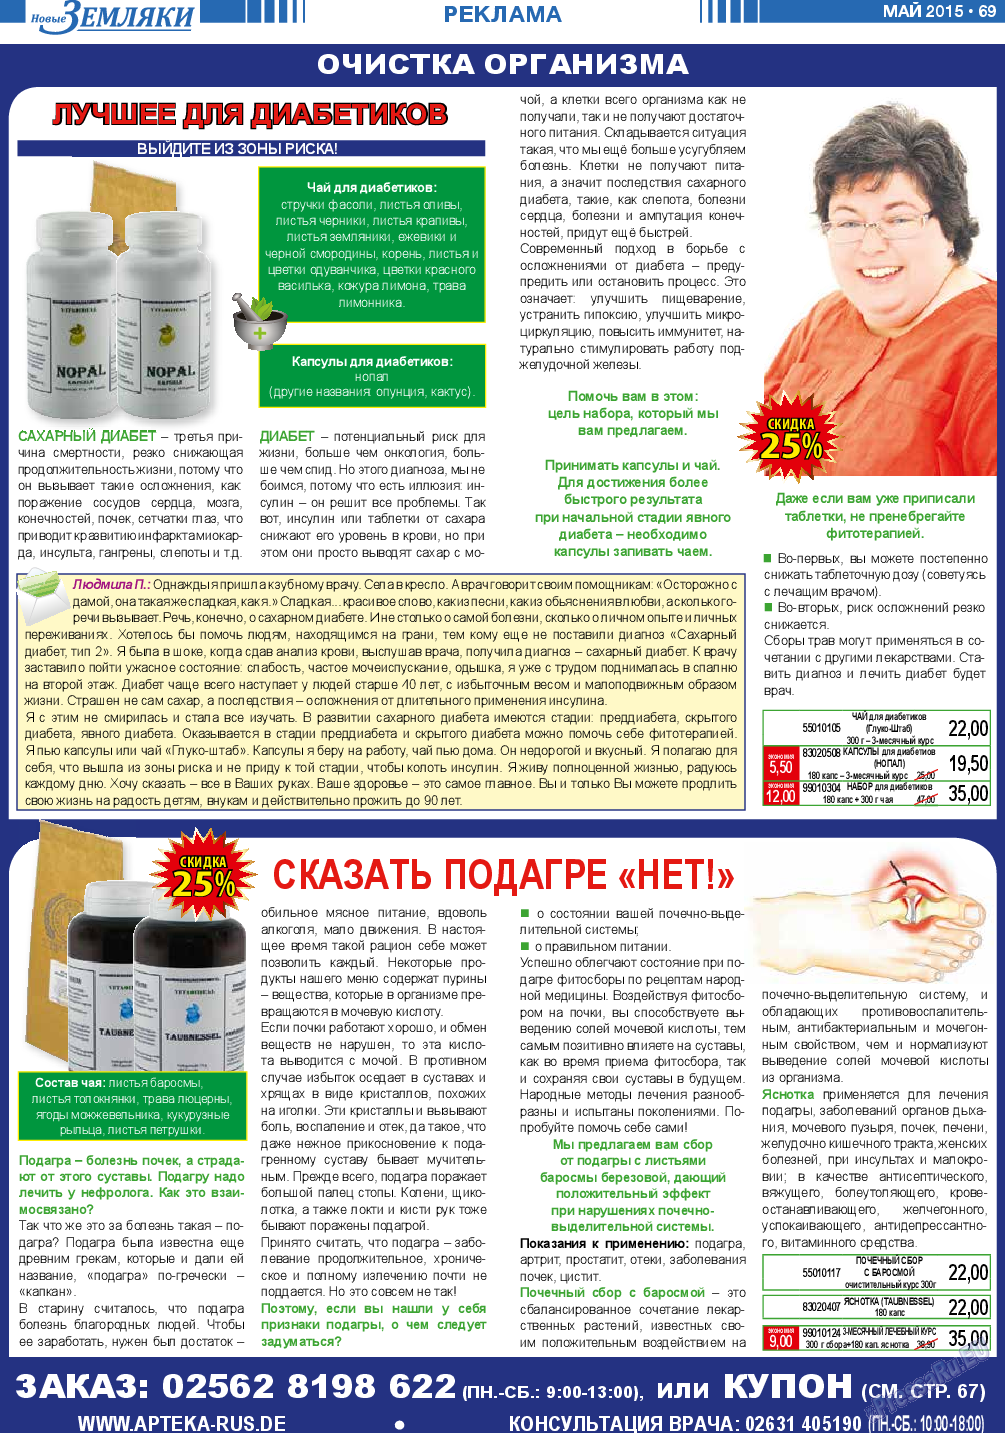 Новые Земляки (газета). 2015 год, номер 5, стр. 69